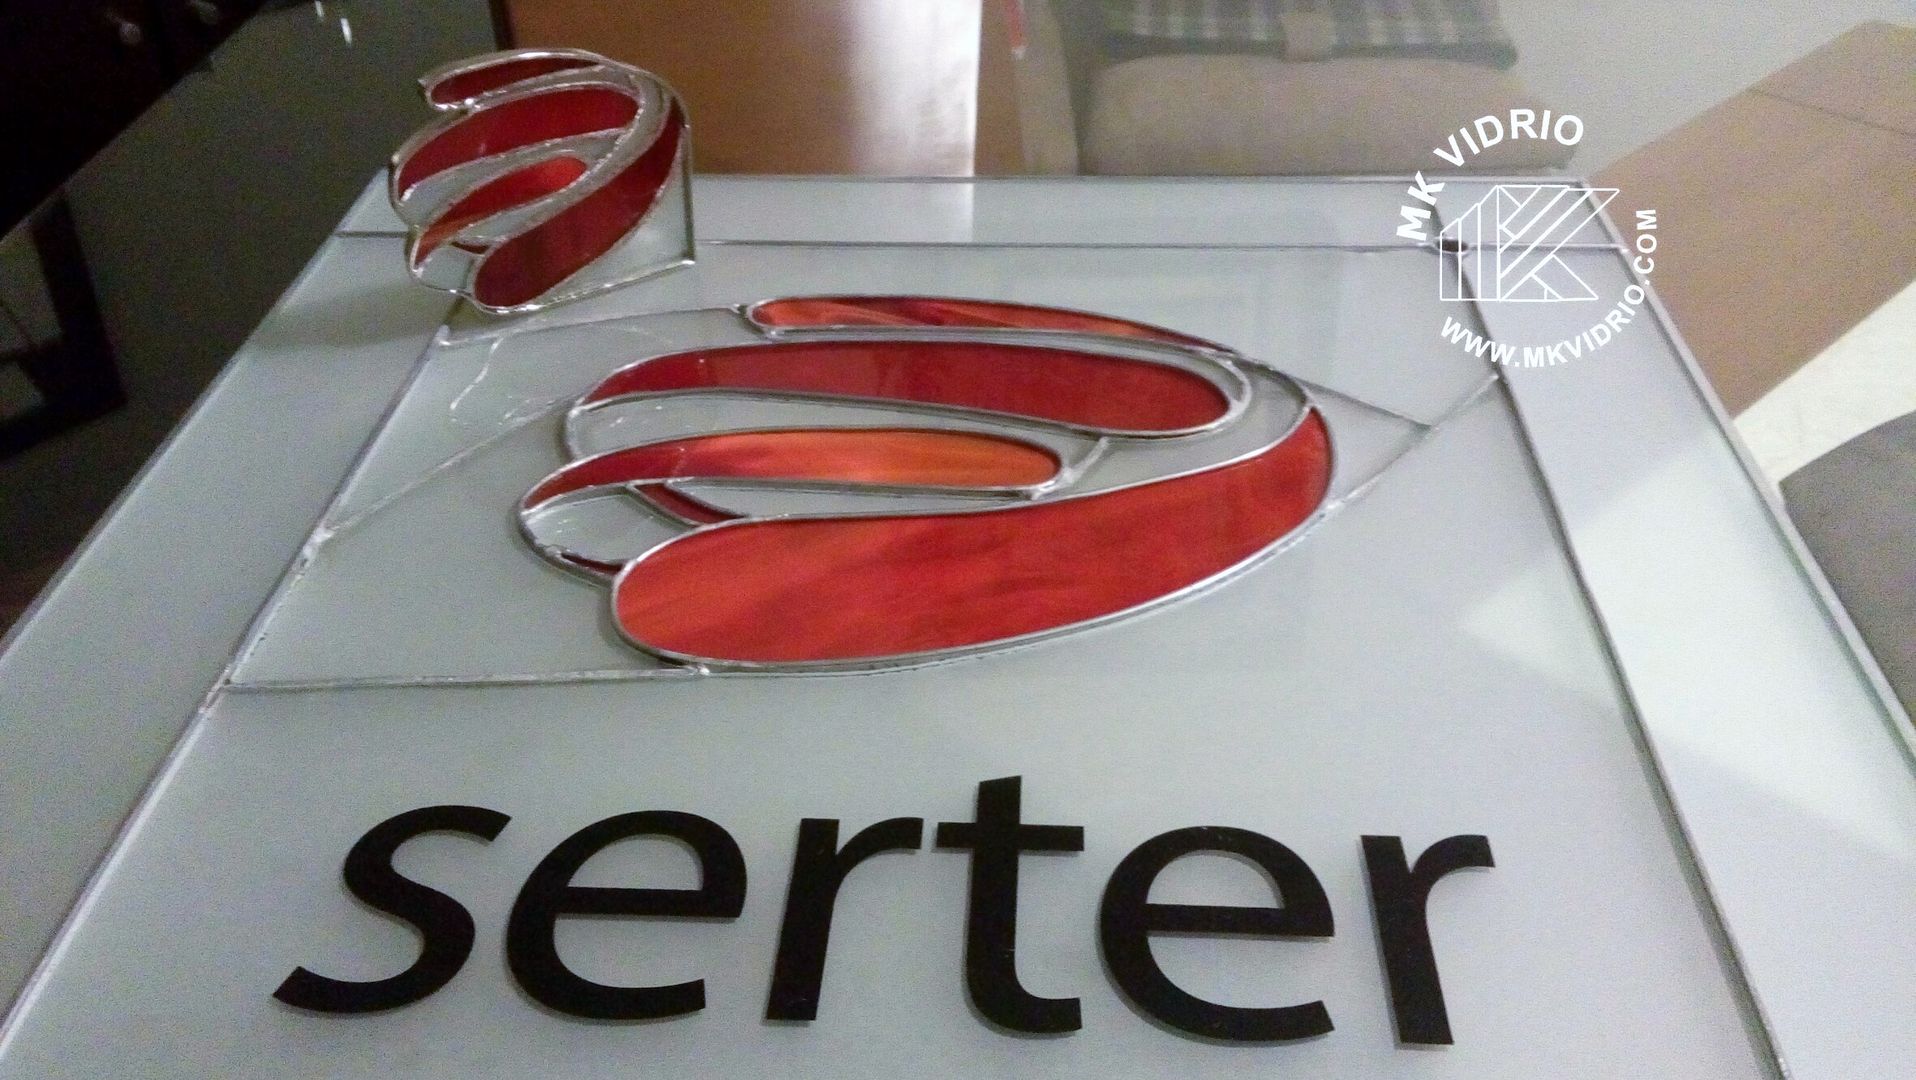 Logo SERTER MKVidrio Espacios comerciales Vidrio logo en vidrio,serter,anuncio en vidrio,imagen en vidrio,luz y color,Oficinas y tiendas